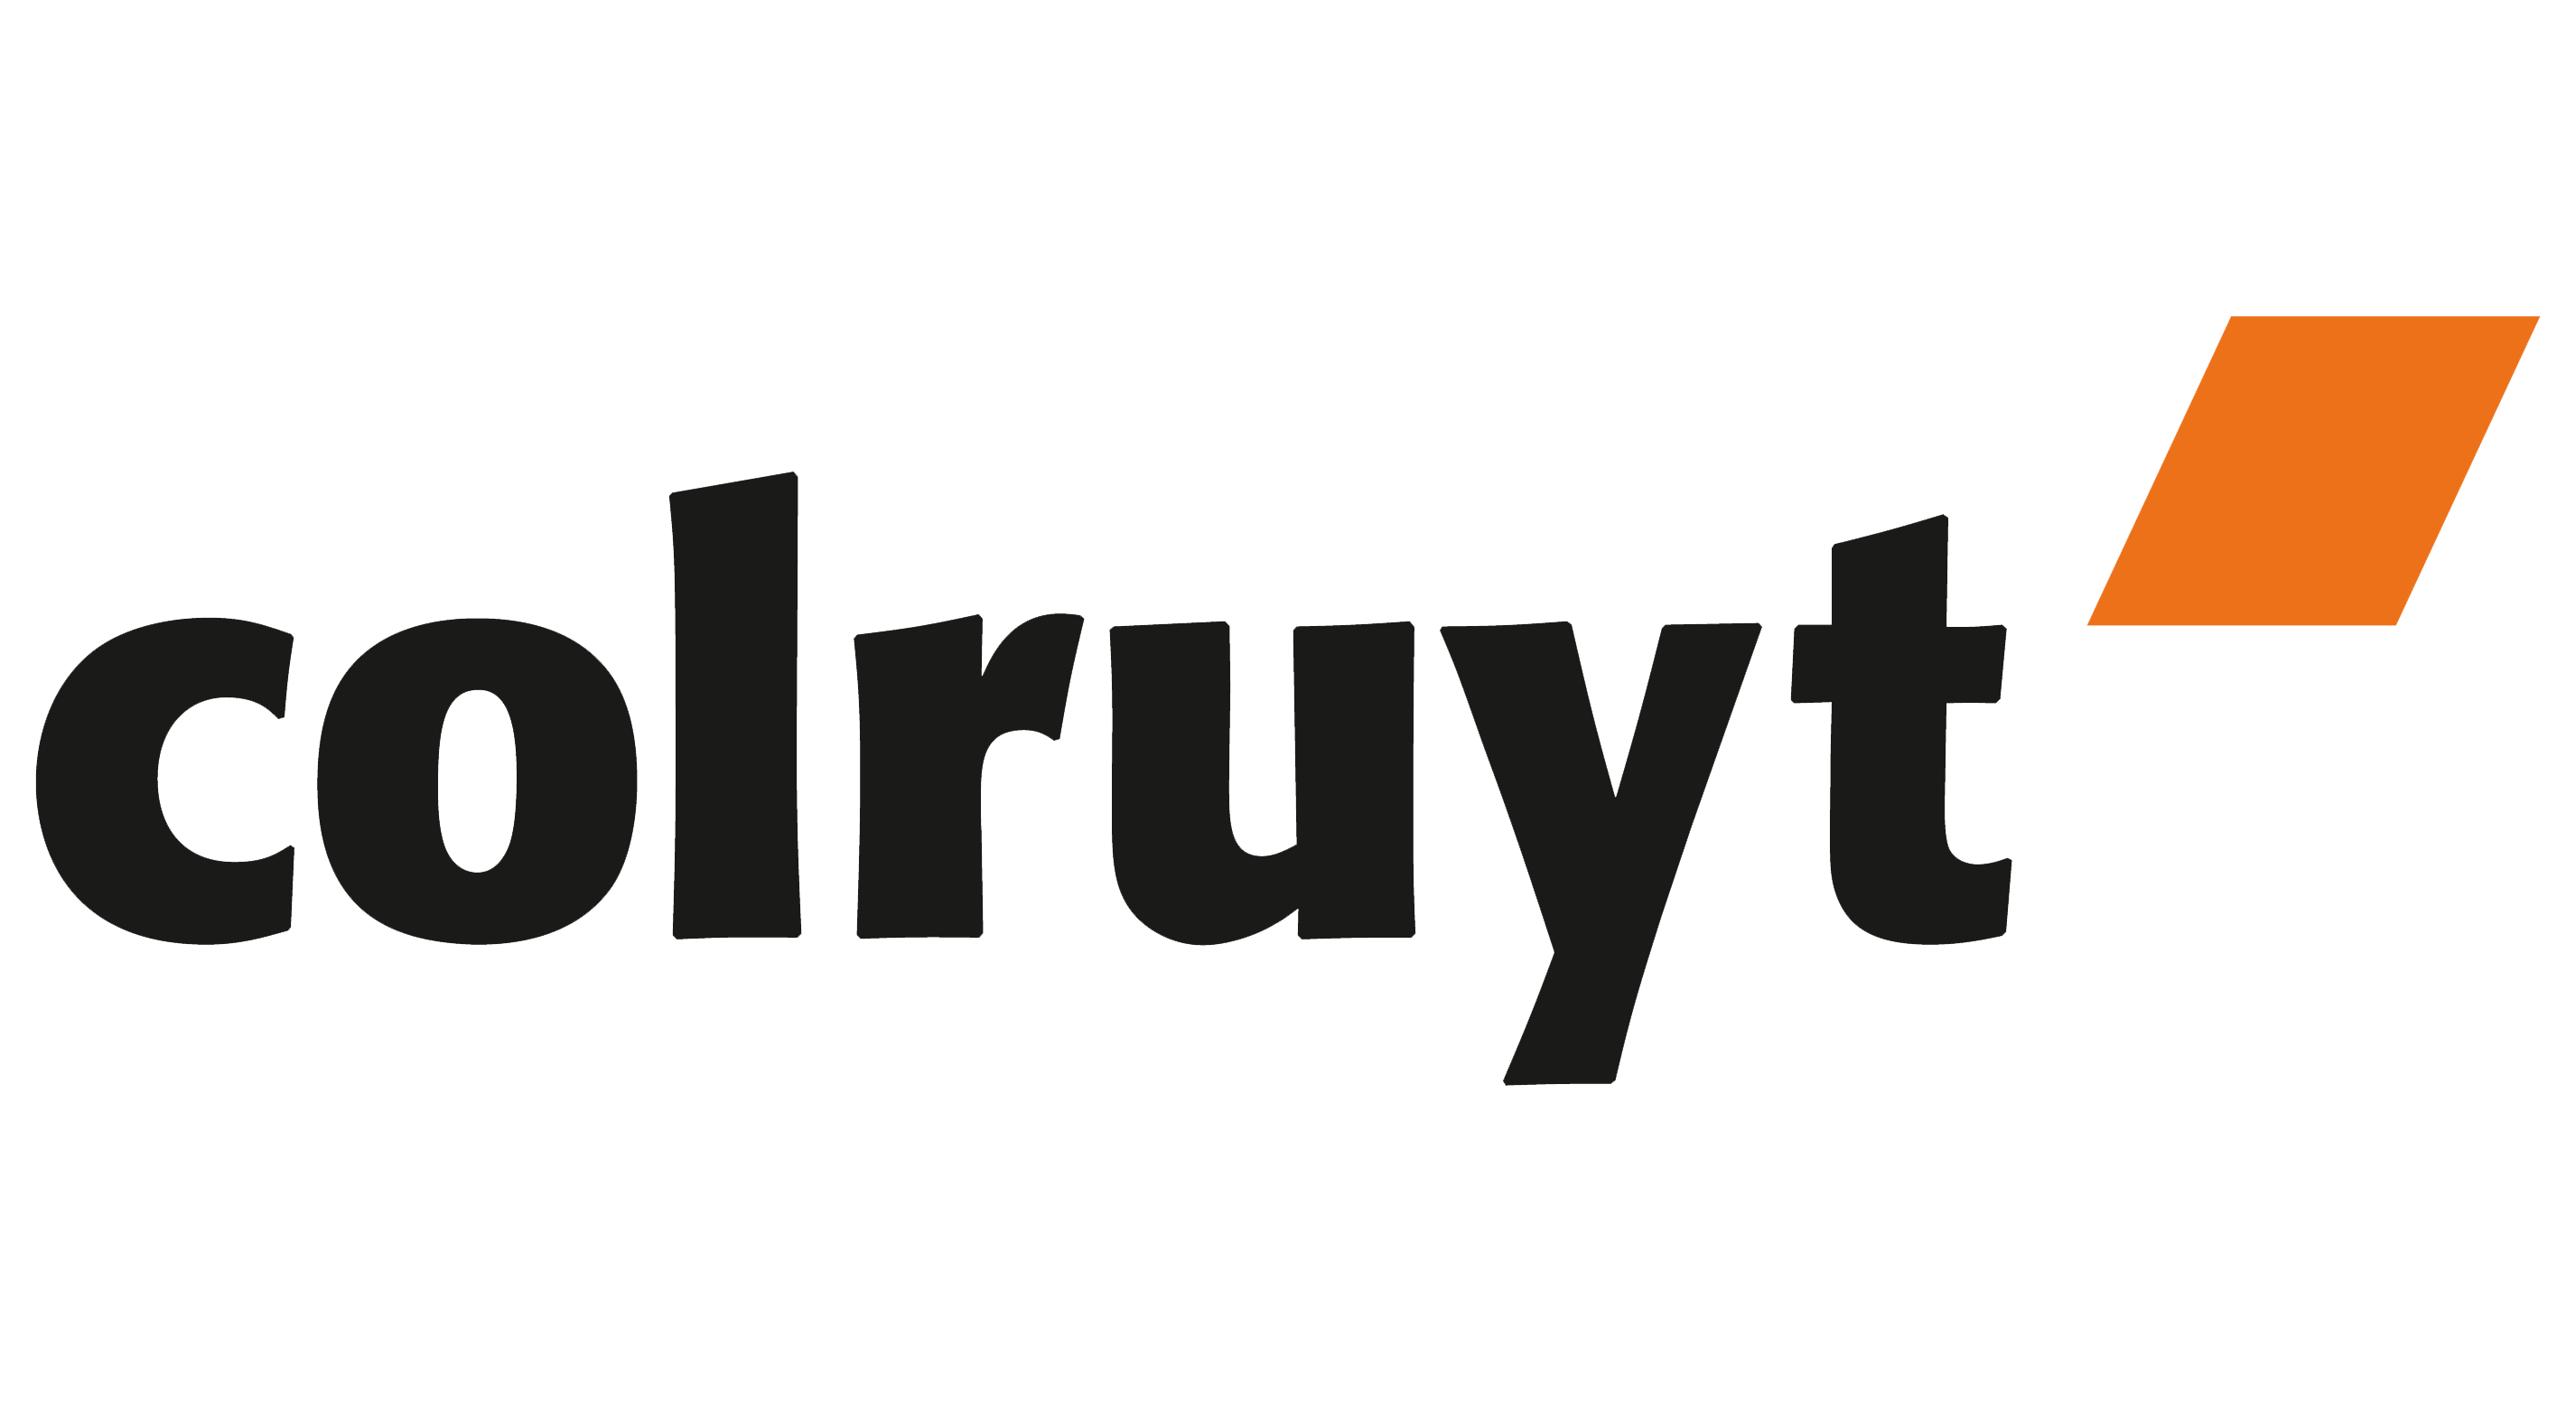 COLRUYT logo